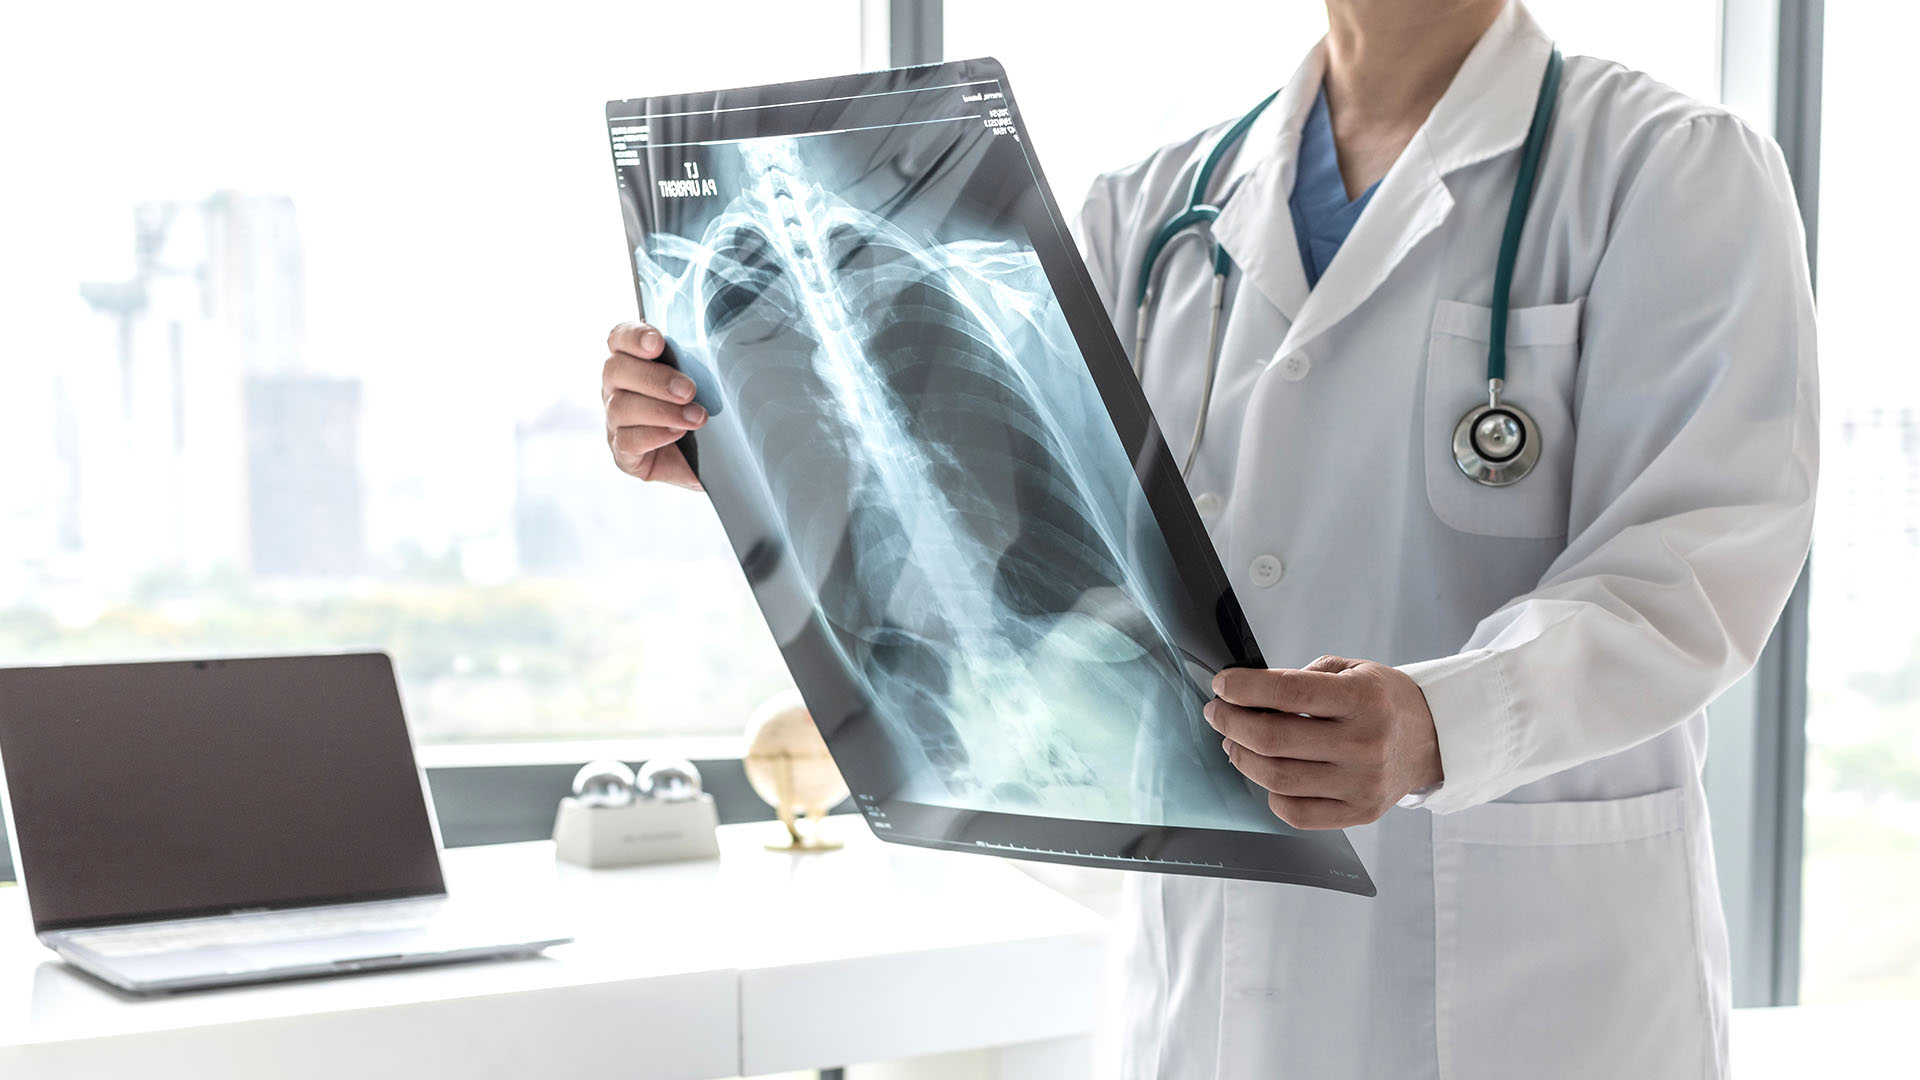 La mayor sobrevida se logra en pacientes que reciben una atención interdisciplinaria en centros especializados, con un intensivo tratamiento para sostener la función pulmonar (Shutterstock)